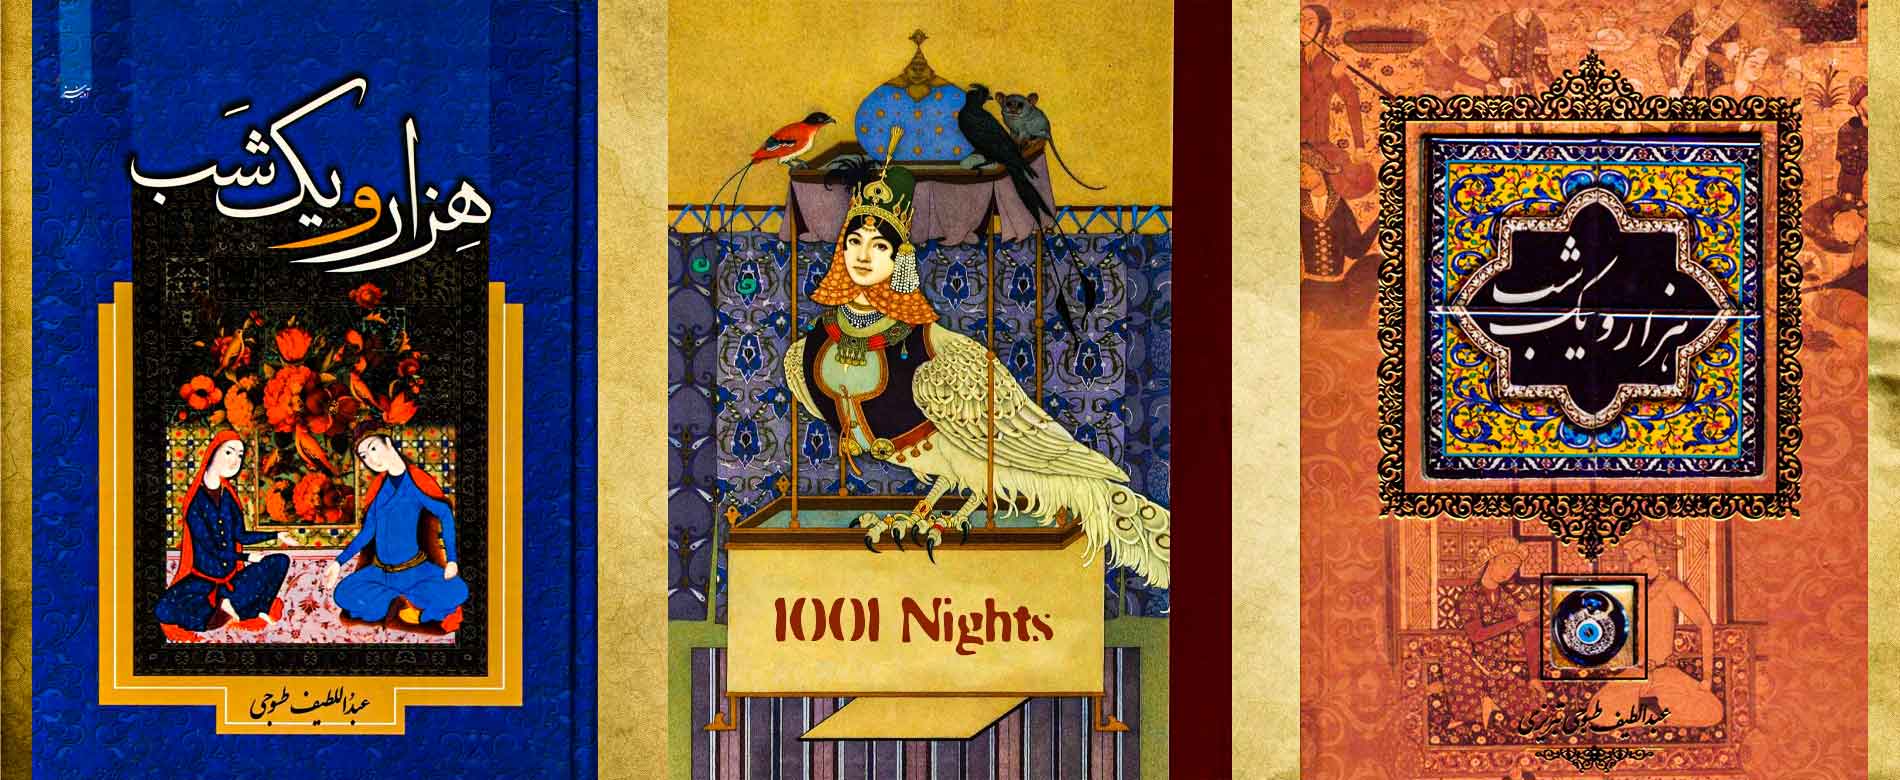 1001 nights tour